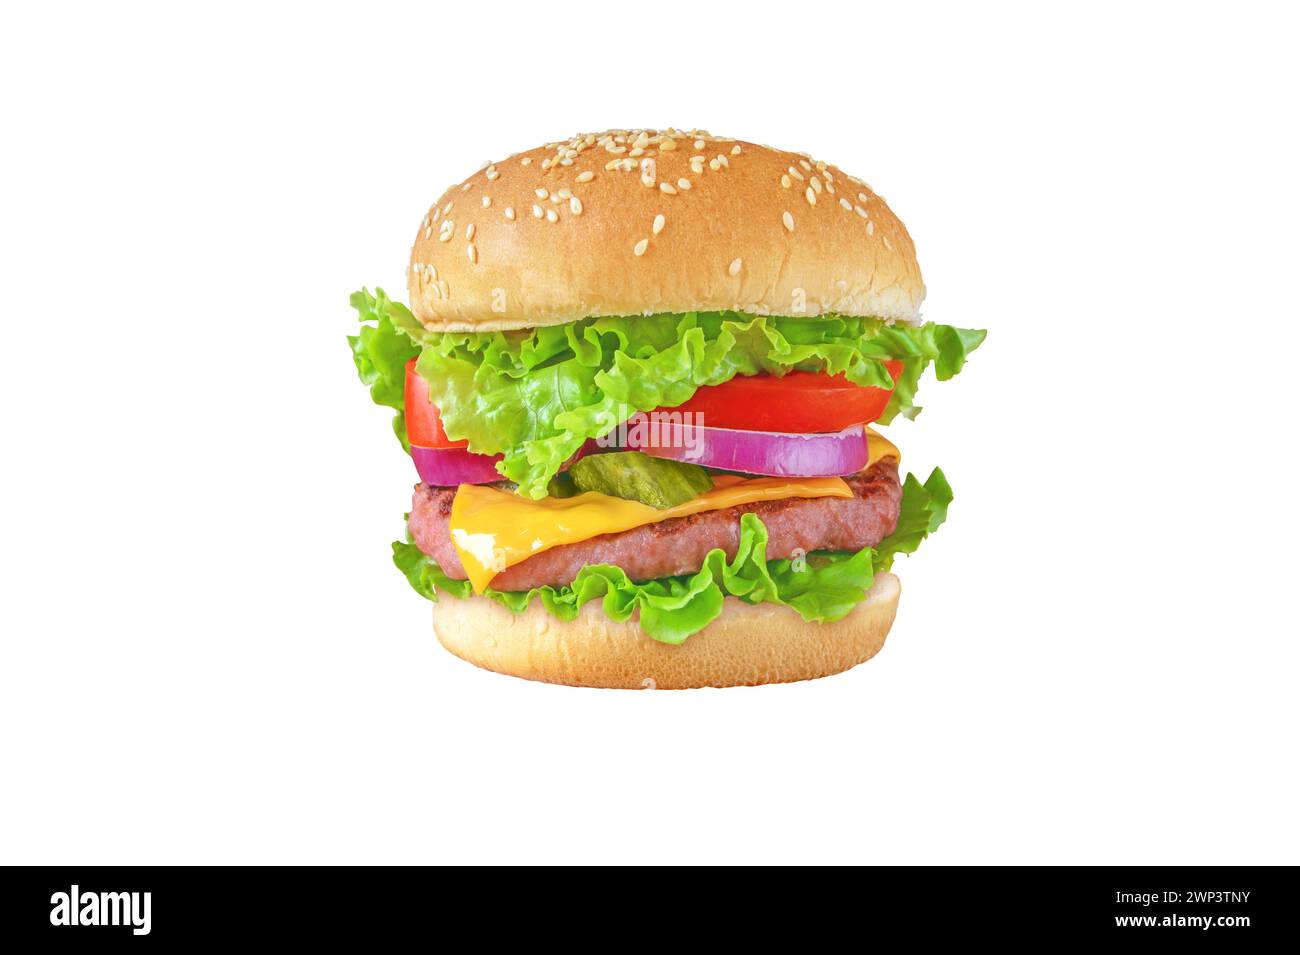 Burger oder Hamburger mit Hackfleisch, Käse, Salat, Tomaten, Zwiebeln, Gurken und Brötchen mit Sesamsamen. Leckeres buntes Sandwich-Isolat Stockfoto